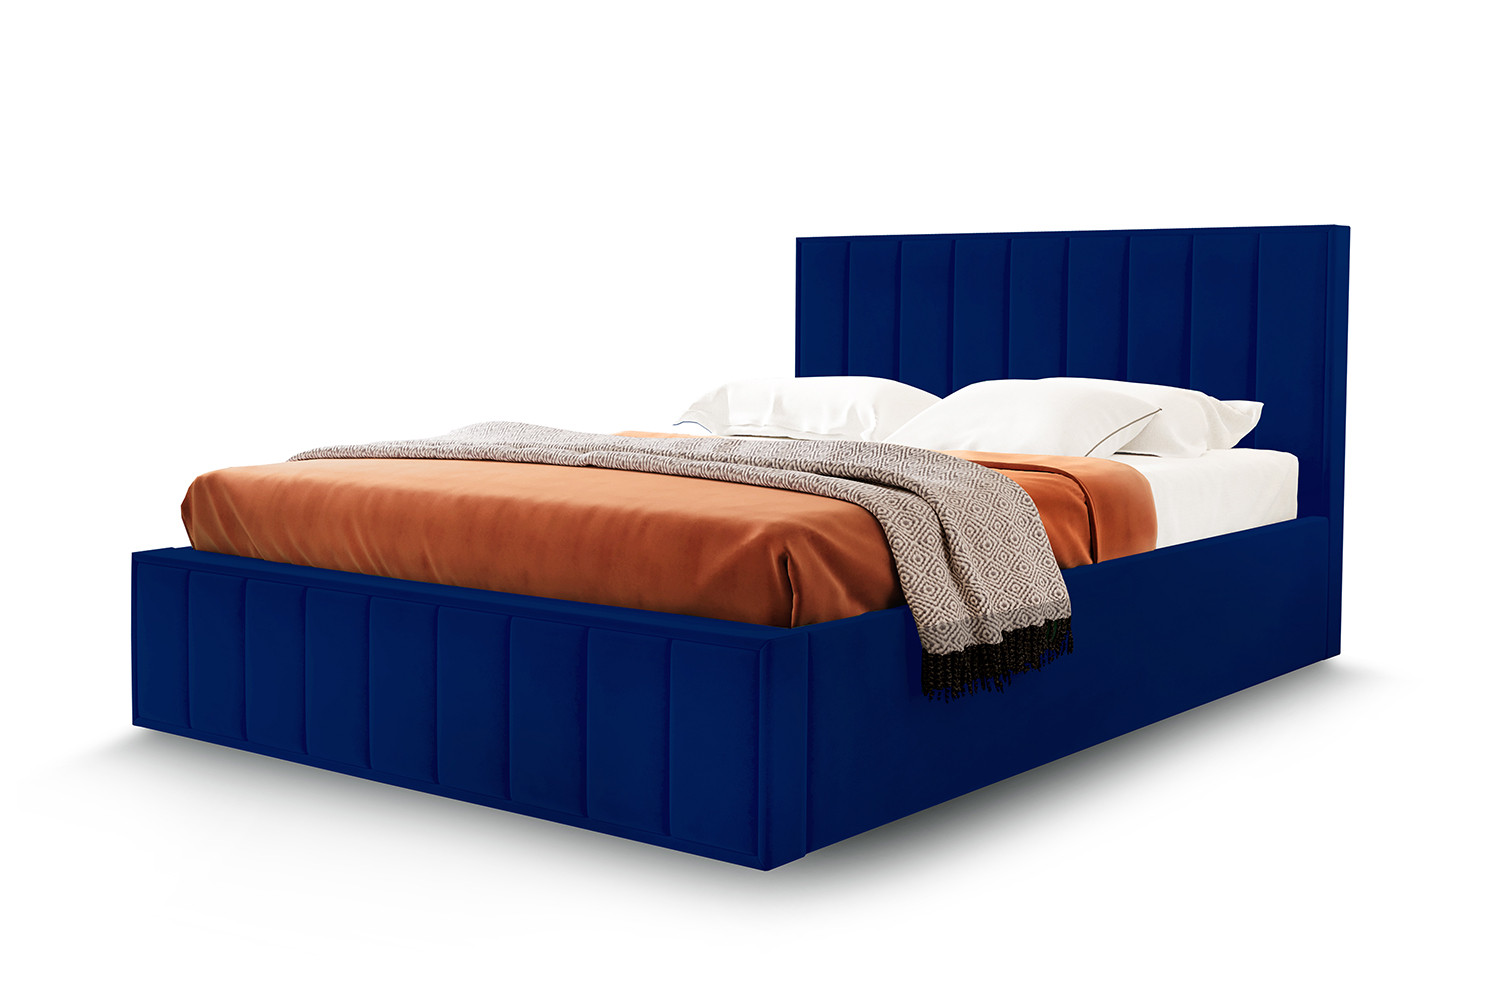 Кровать без подъёмного механизма Hoff Вена